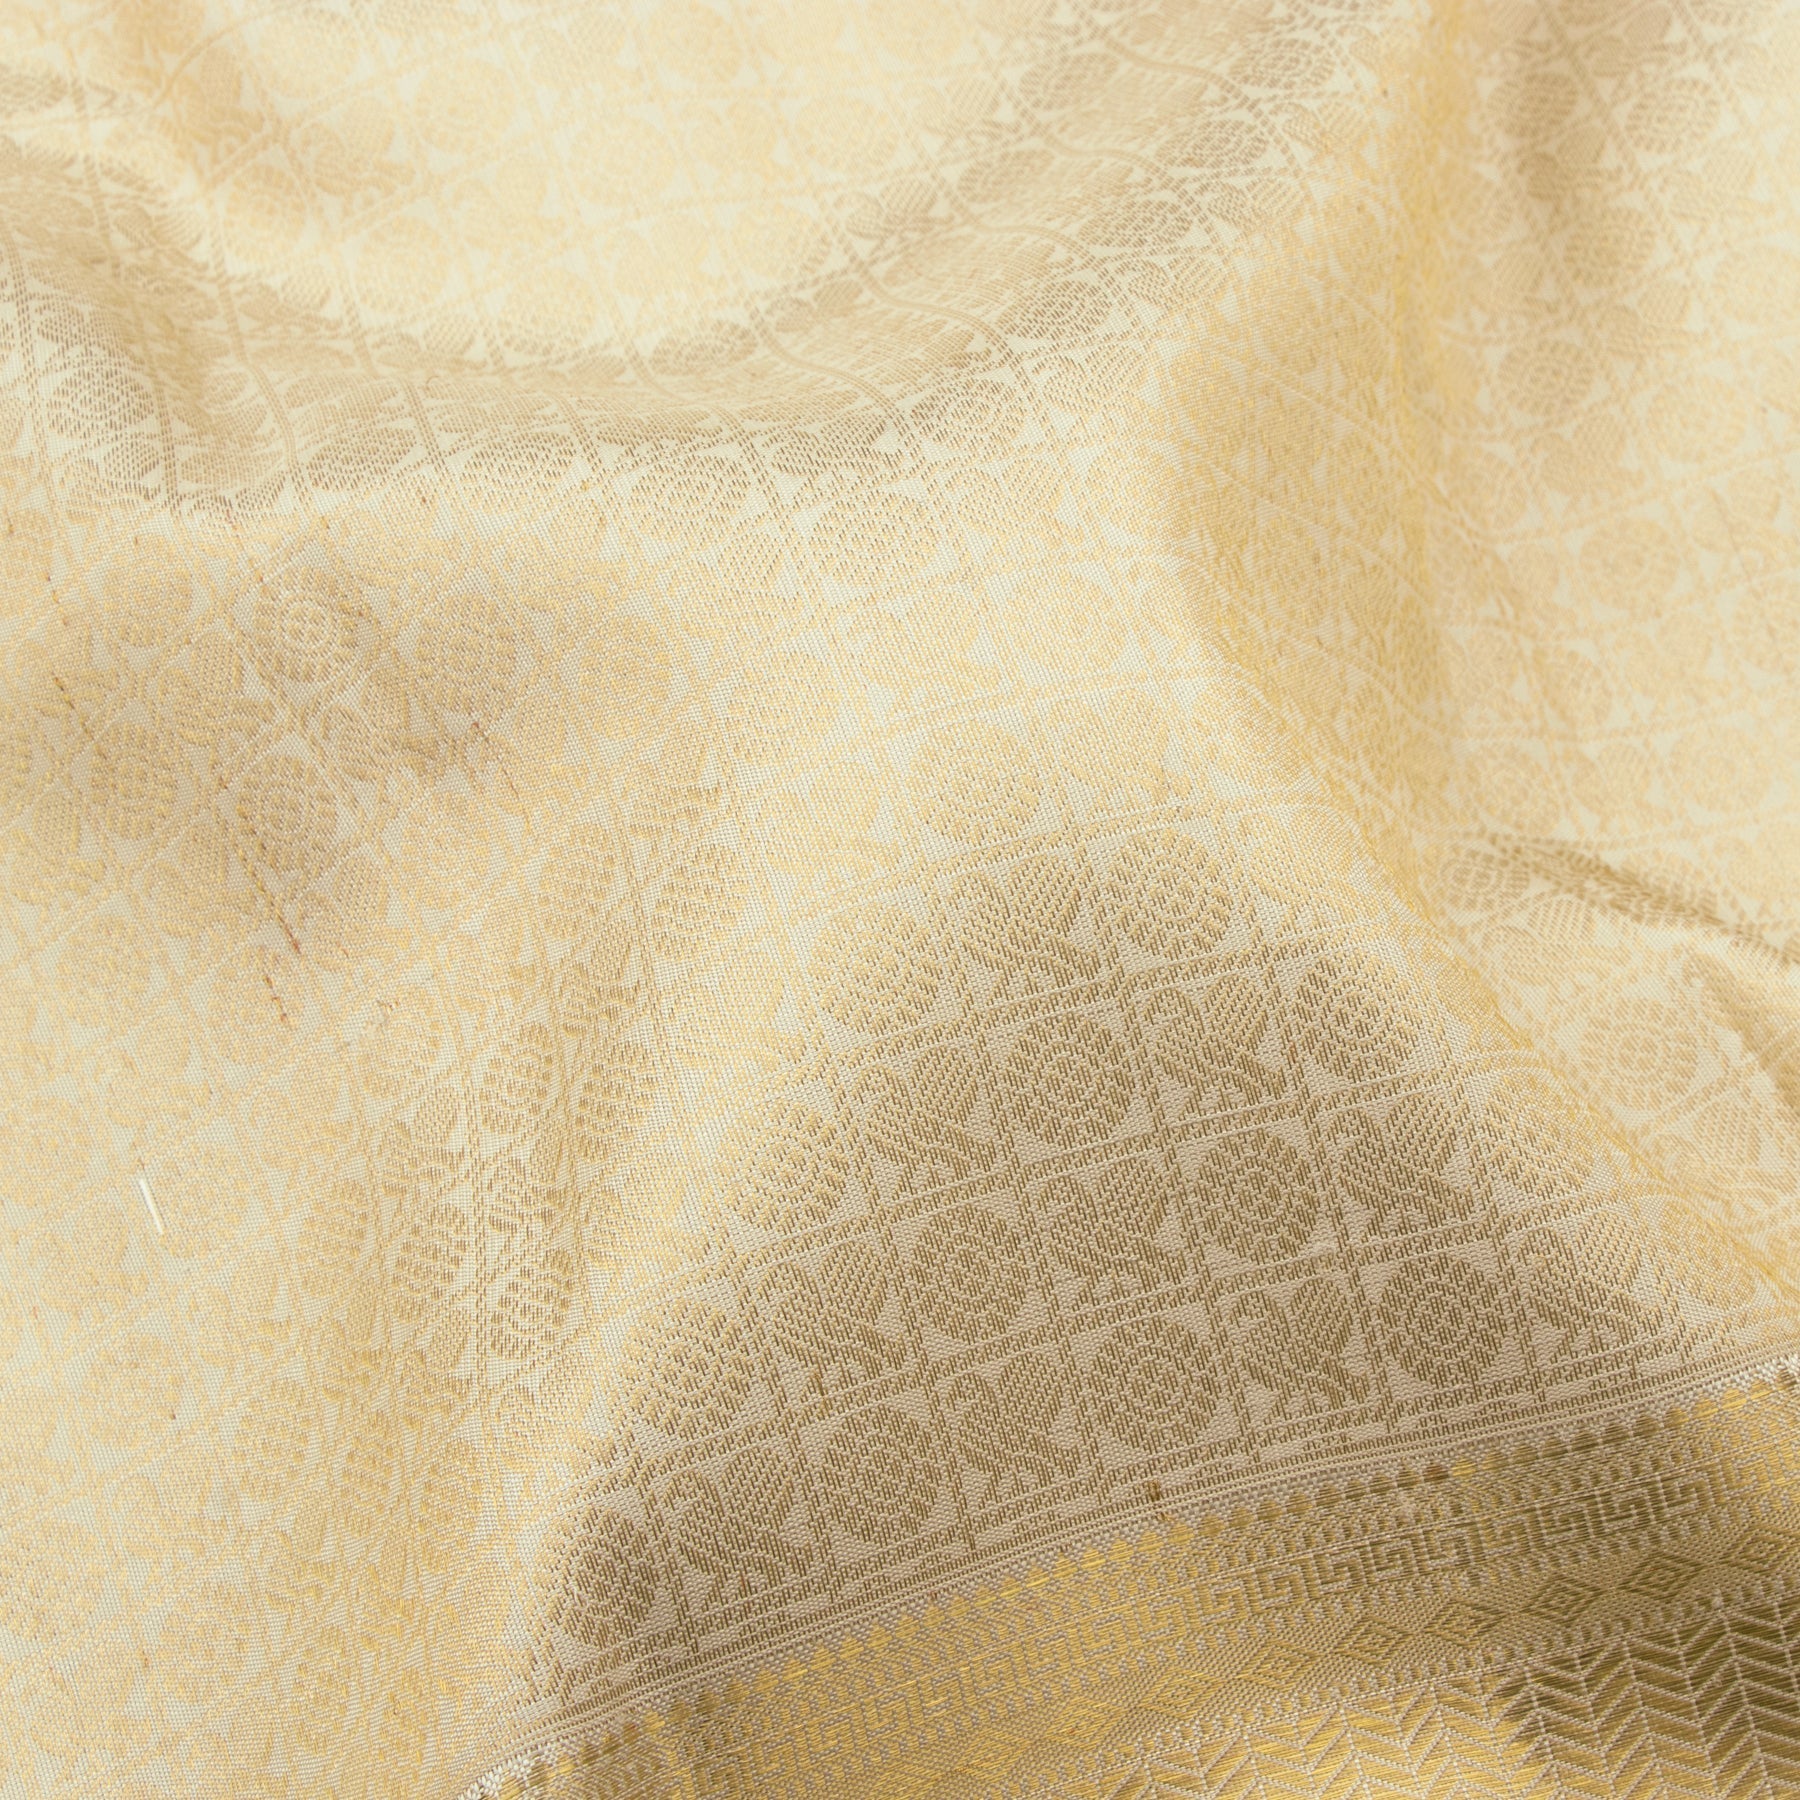 Kanakavalli Kanjivaram Silk Sari 23-110-HS001-03799 - Fabric View